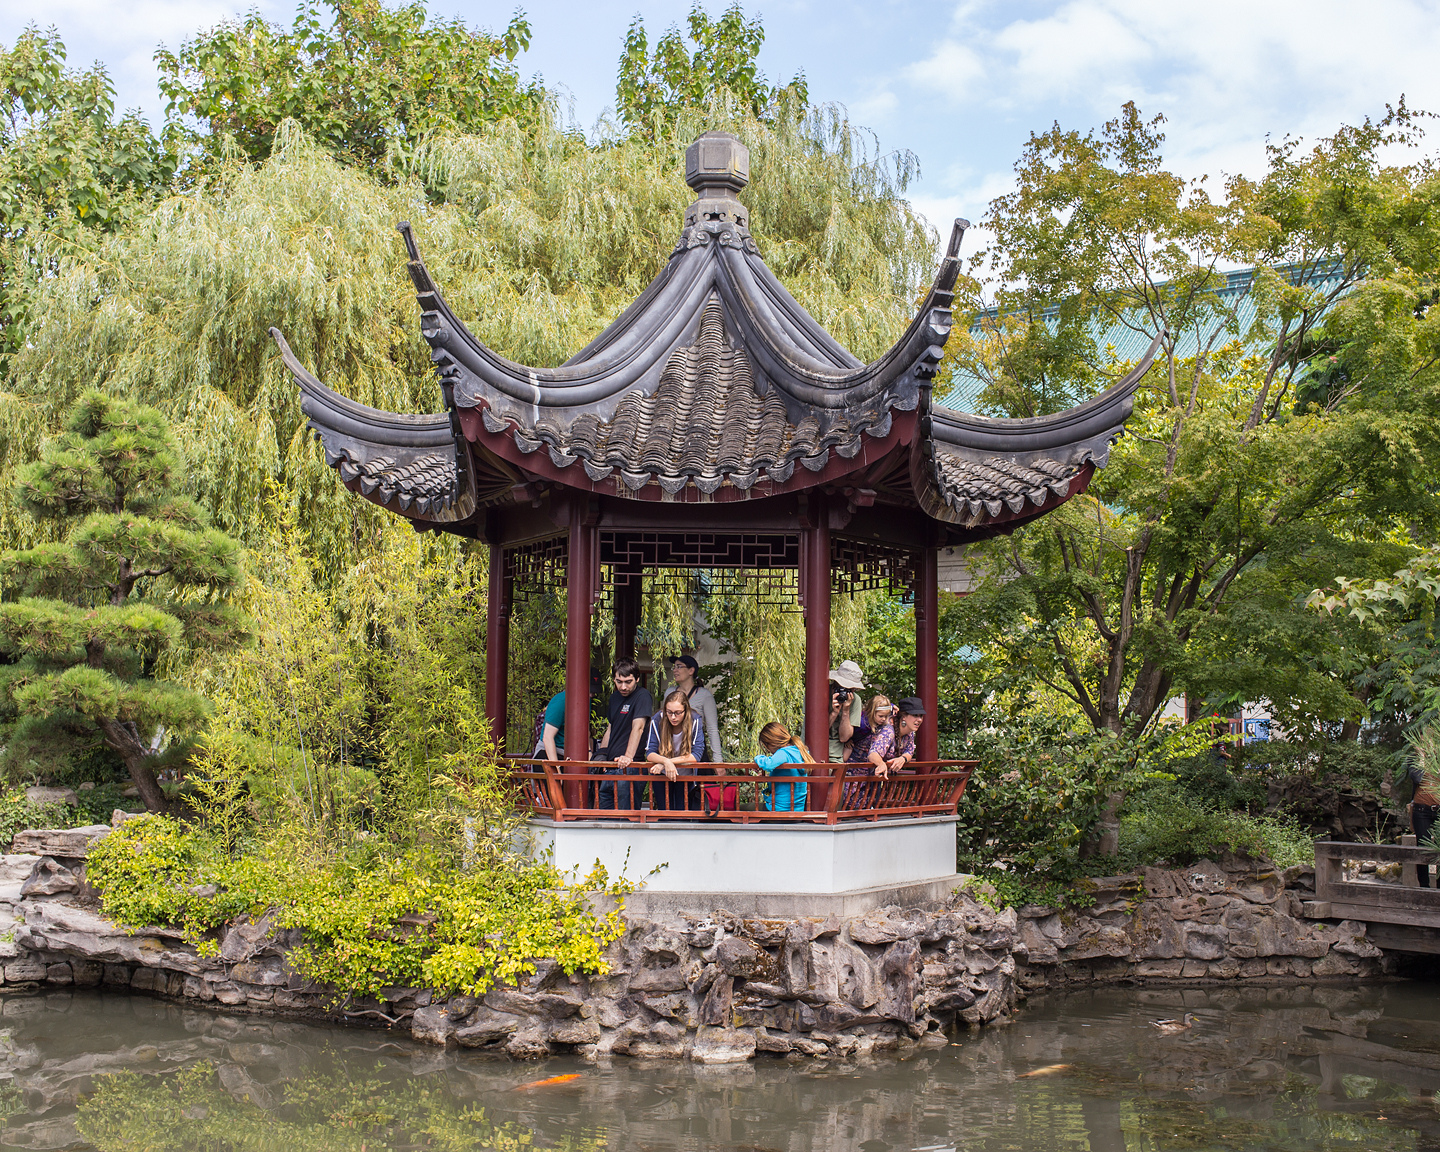  Chinese Garden, 2015       